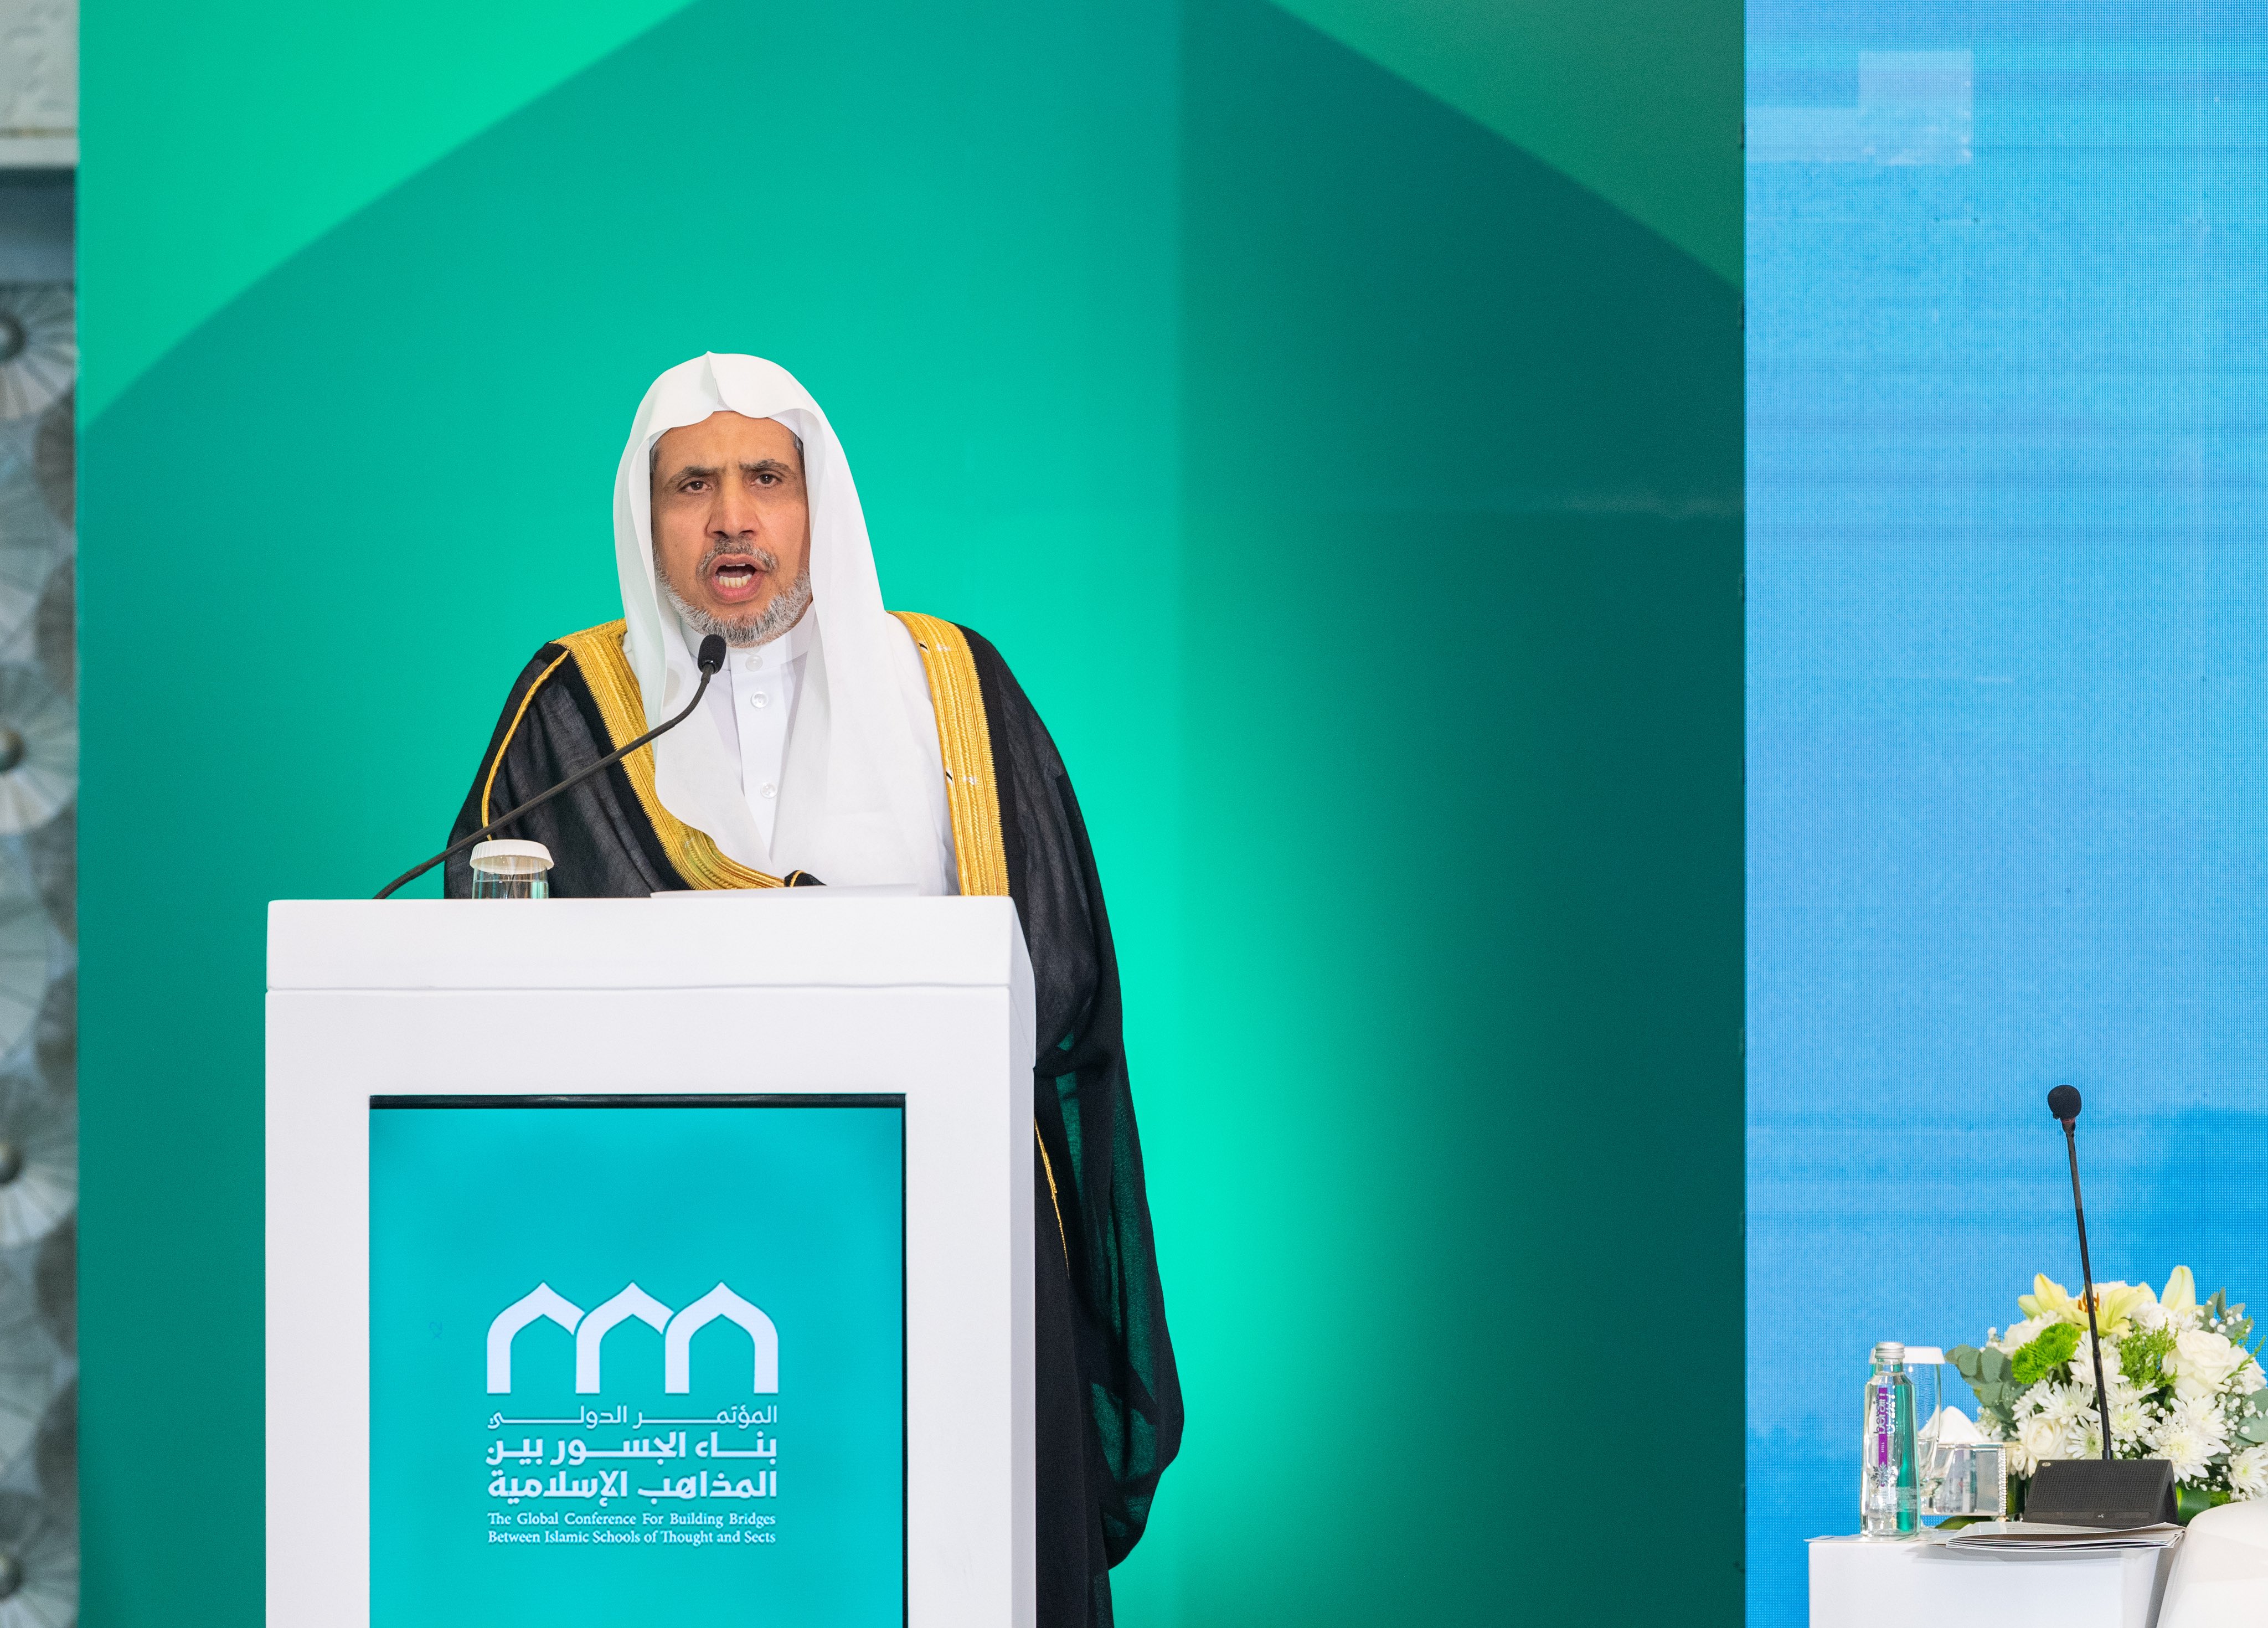 معالي الأمين العام، رئيس هيئة علماء المسلمين، فضيلة الشيخ الدكتور محمد بن عبدالكريم العيسى، في كلمته الافتتاحية لمؤتمر: "بناء الجسور بين المذاهب الإسلامية"